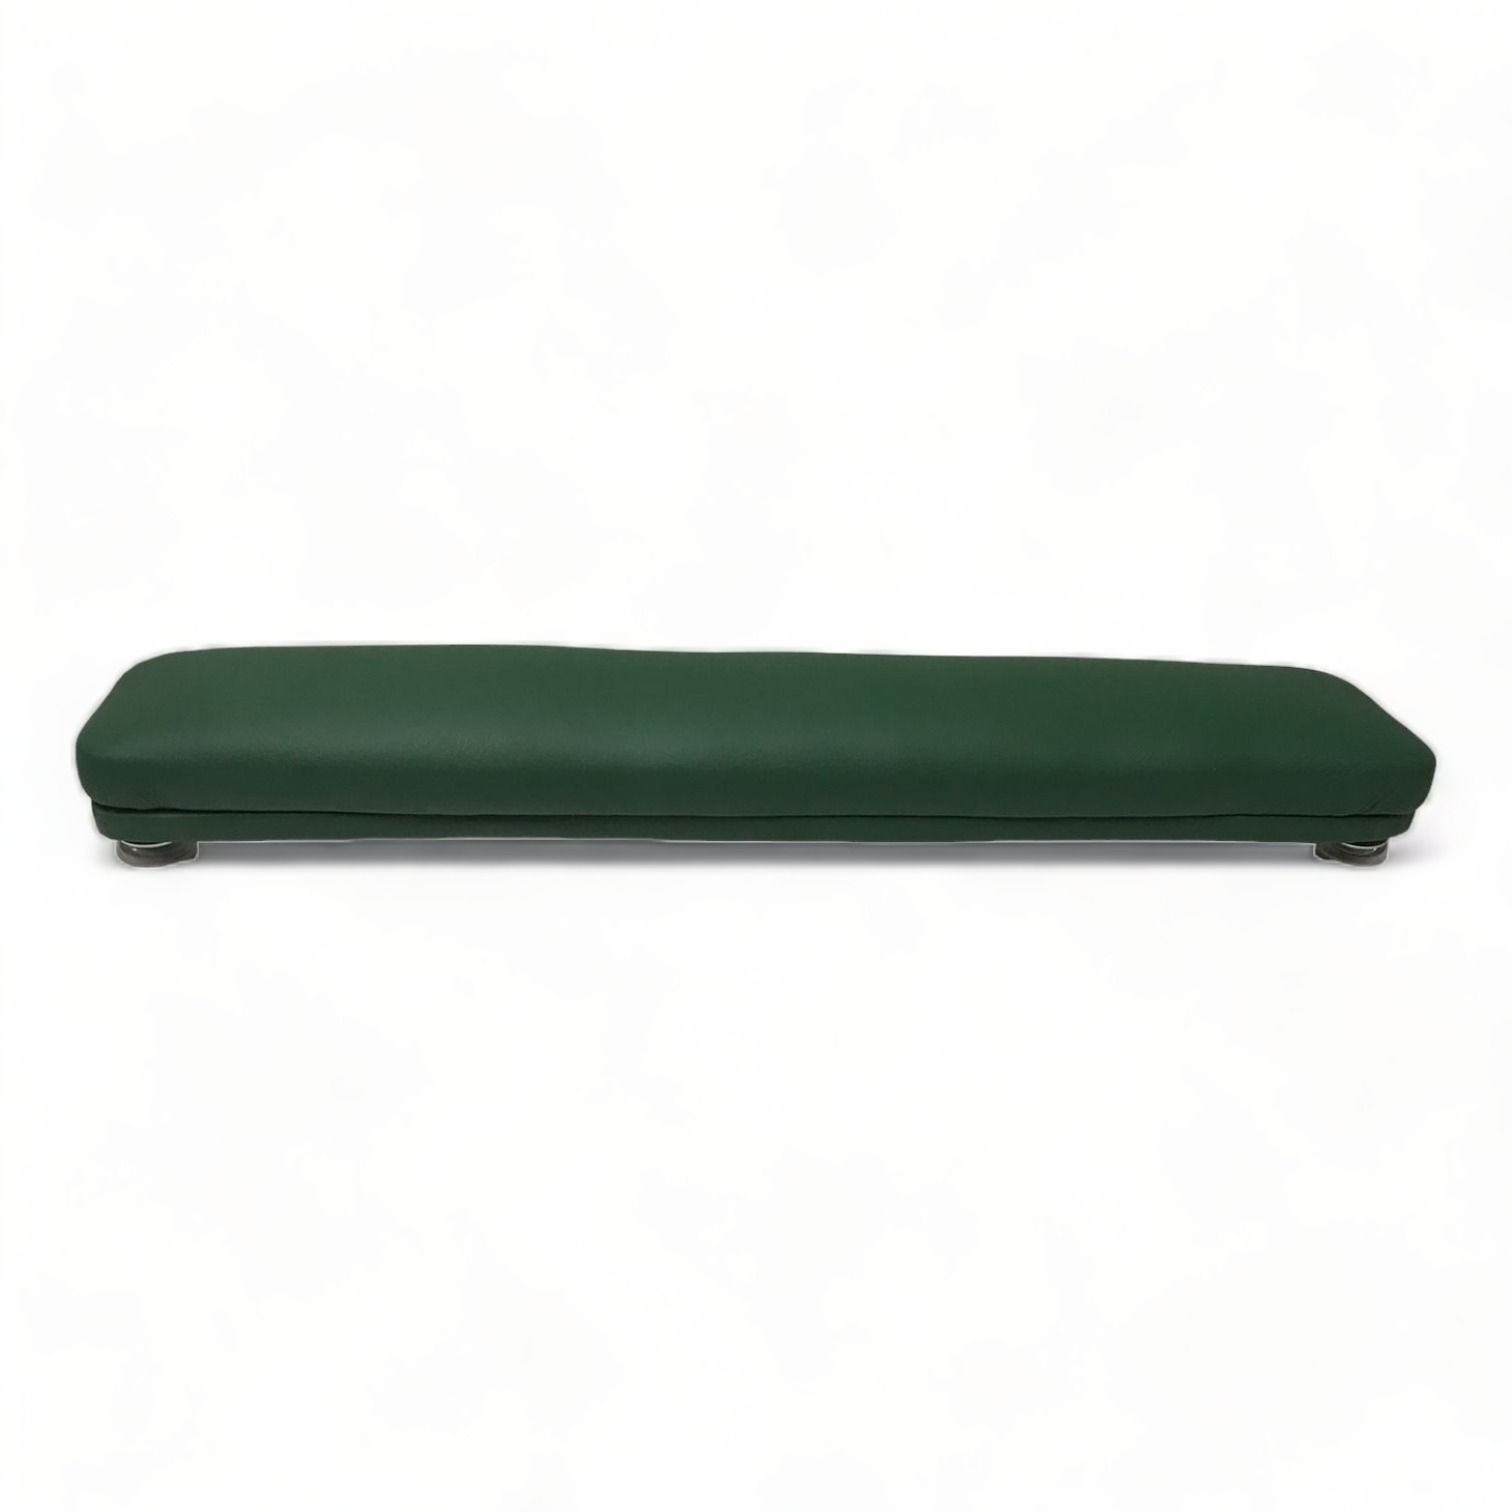 Валик для маникюра Мебель Бьюти Бьюти Зеленый 50 см bradex валик для фитнеса